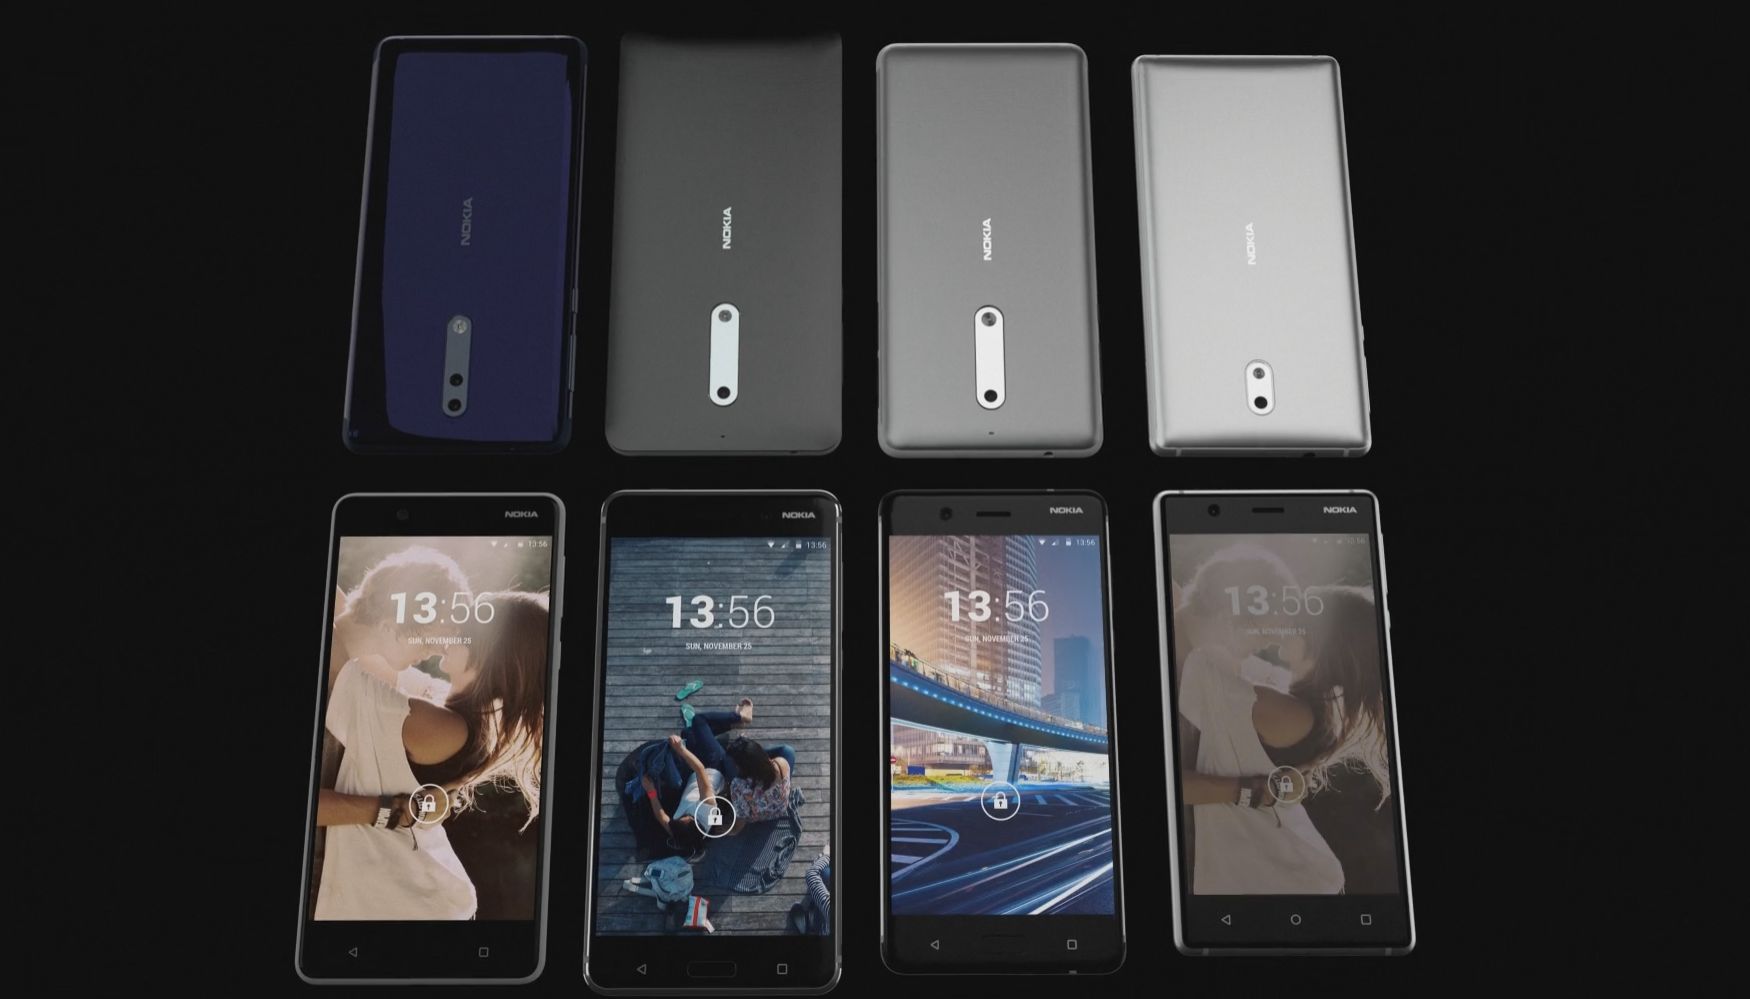 Captura del video de GCL con los 4 smartphones de Nokia.